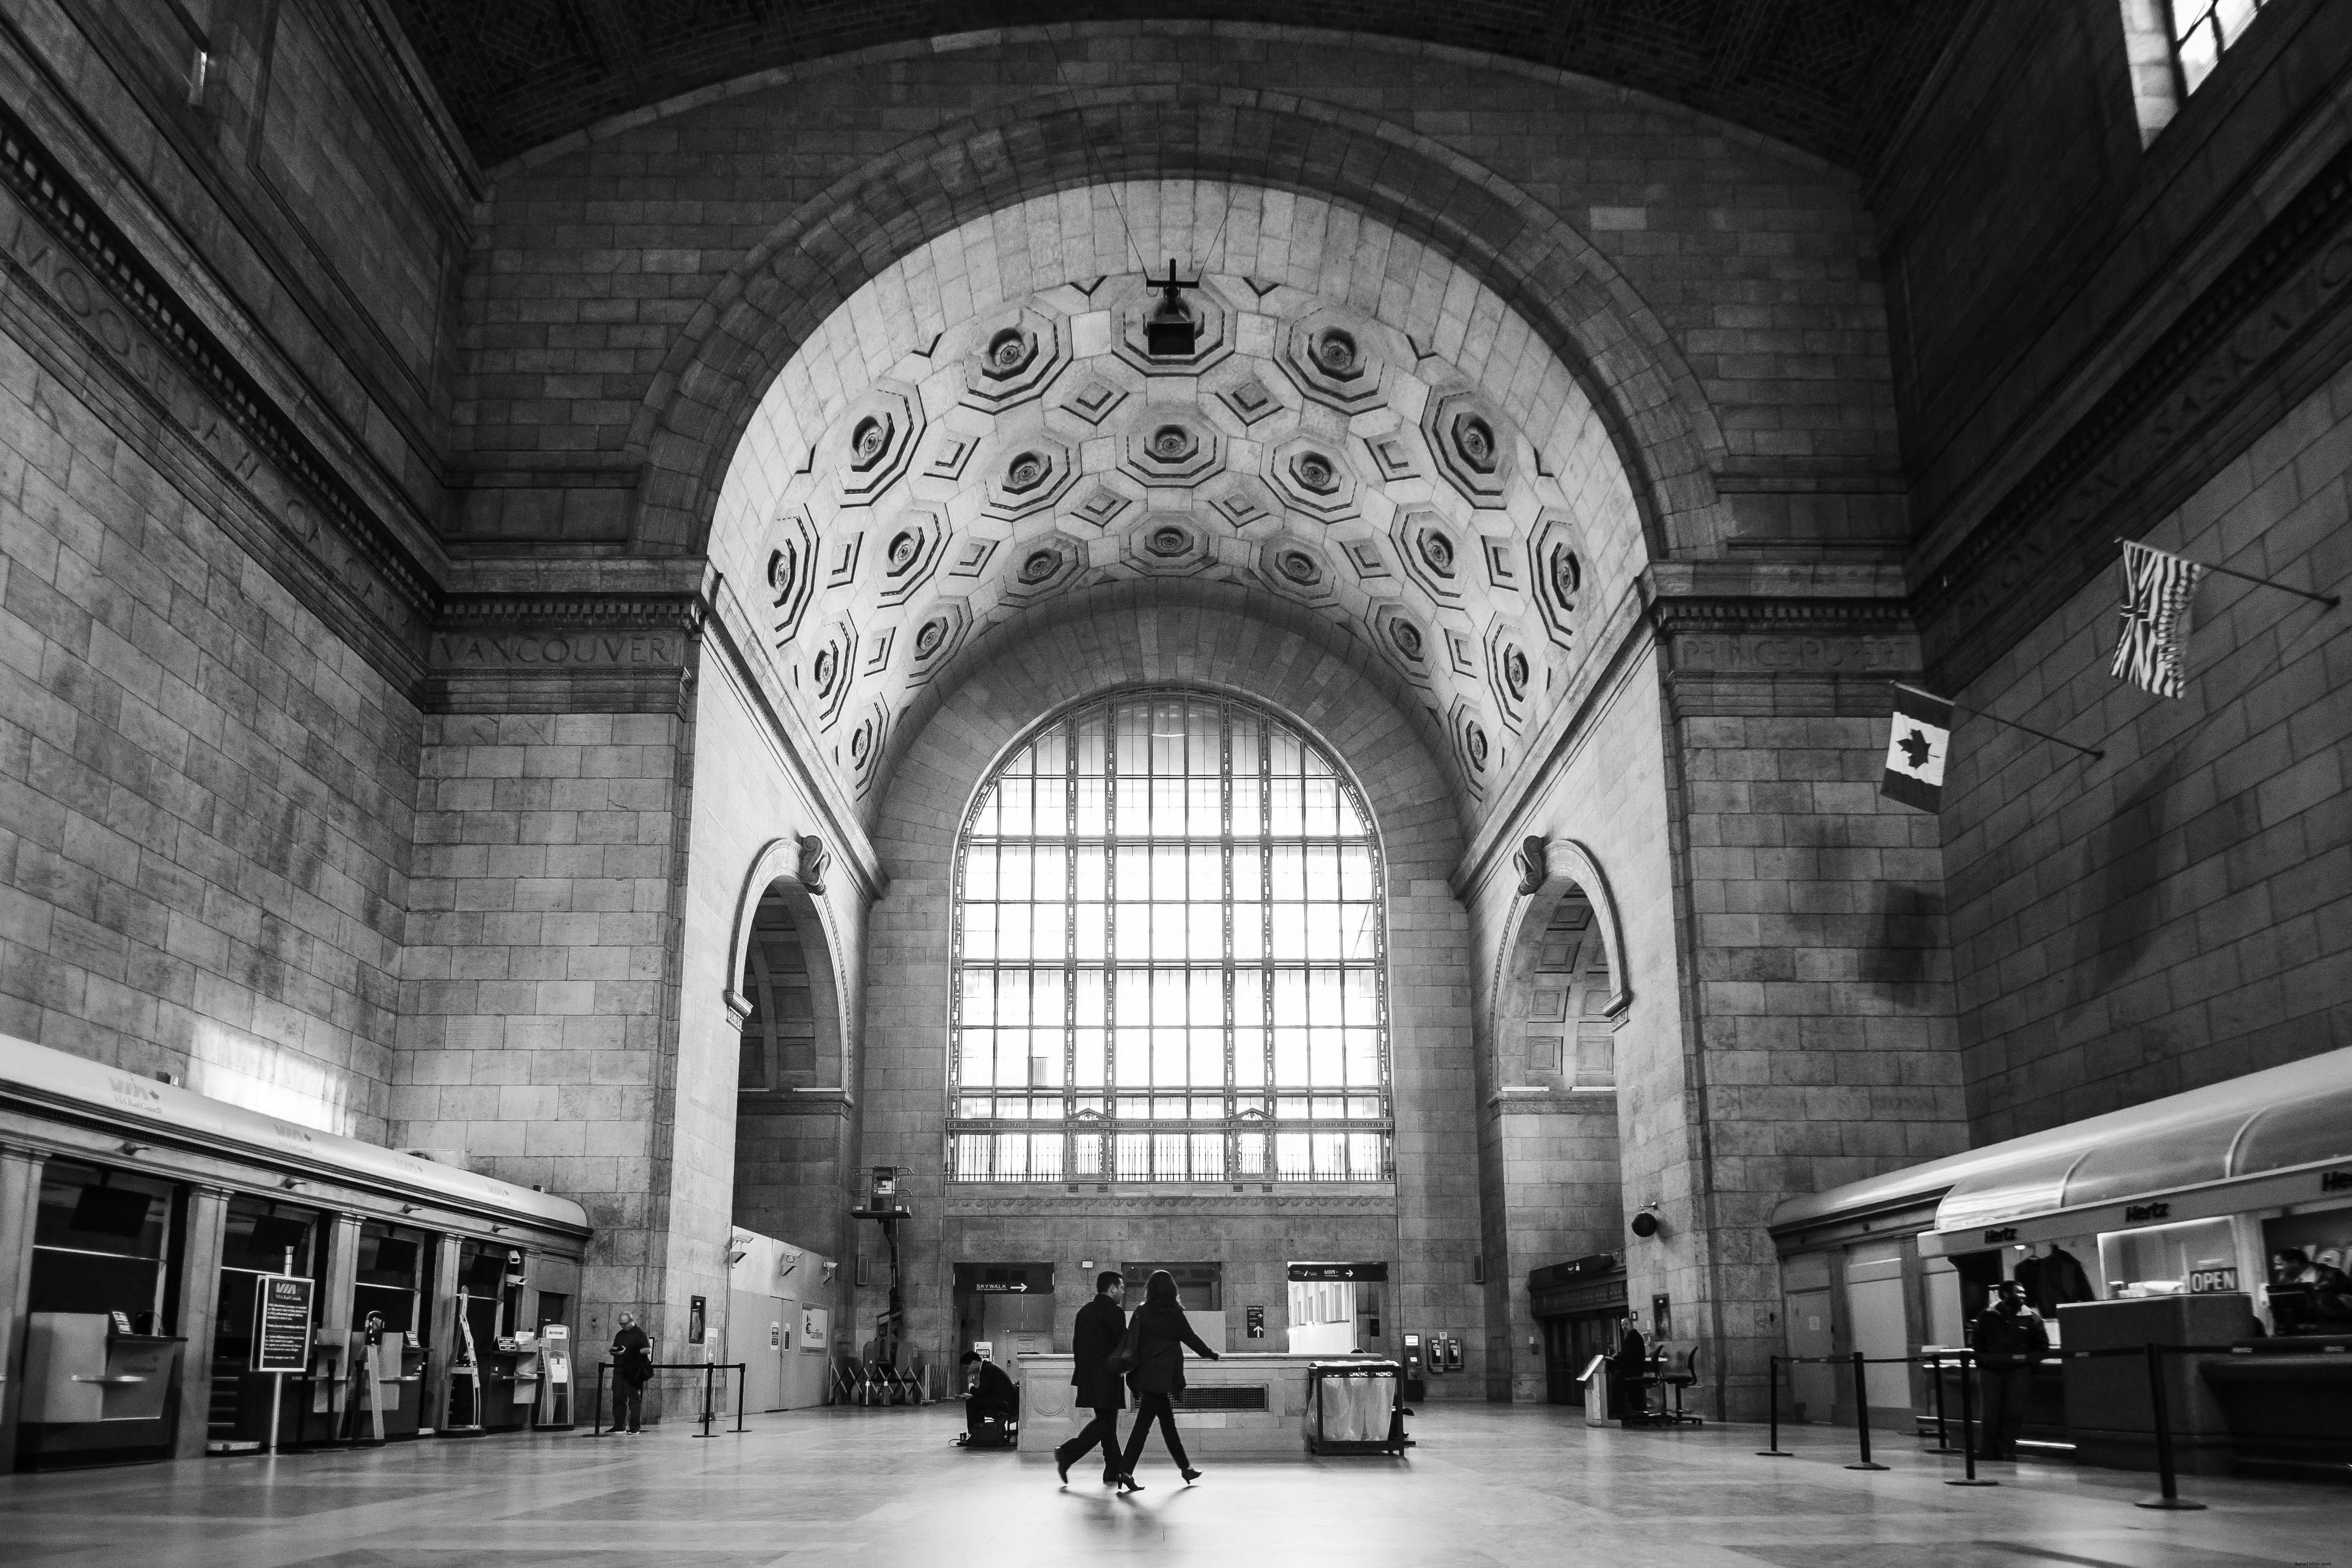 Estação de trem em foto preto e branco